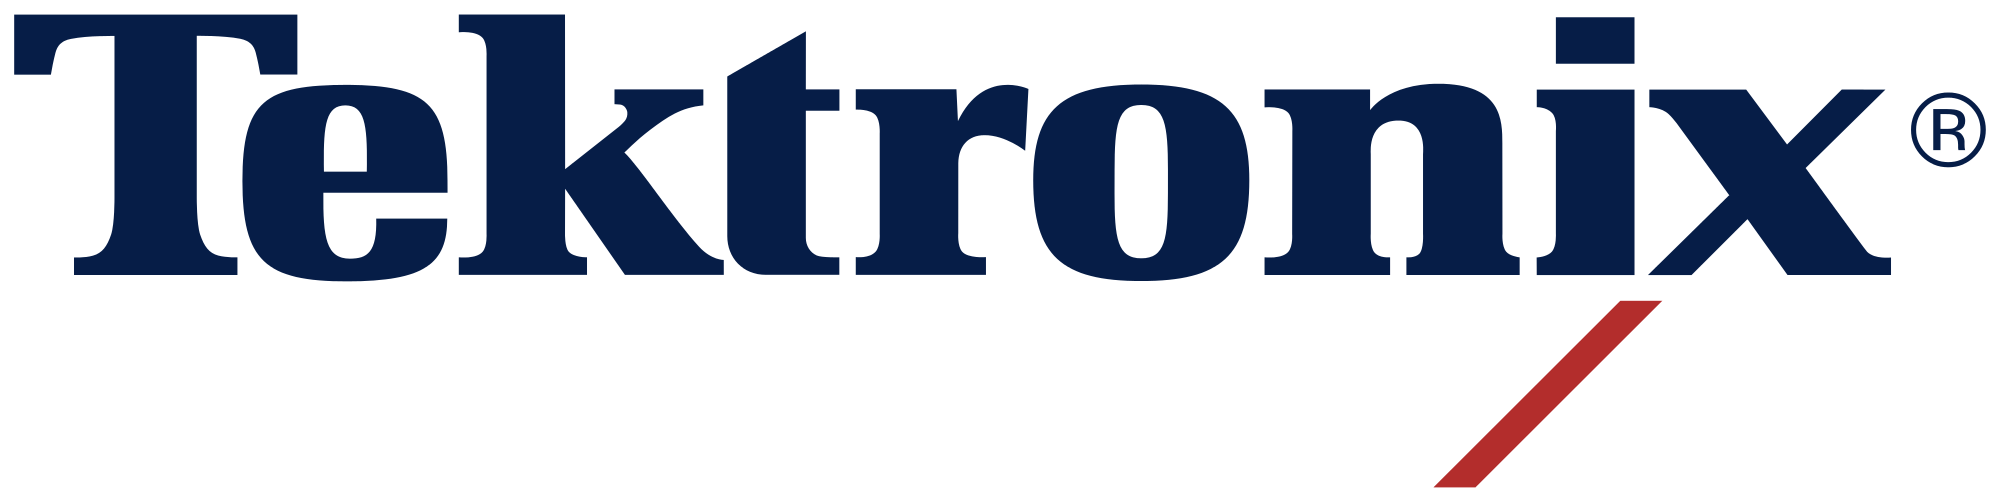 Xerox-Tektronix